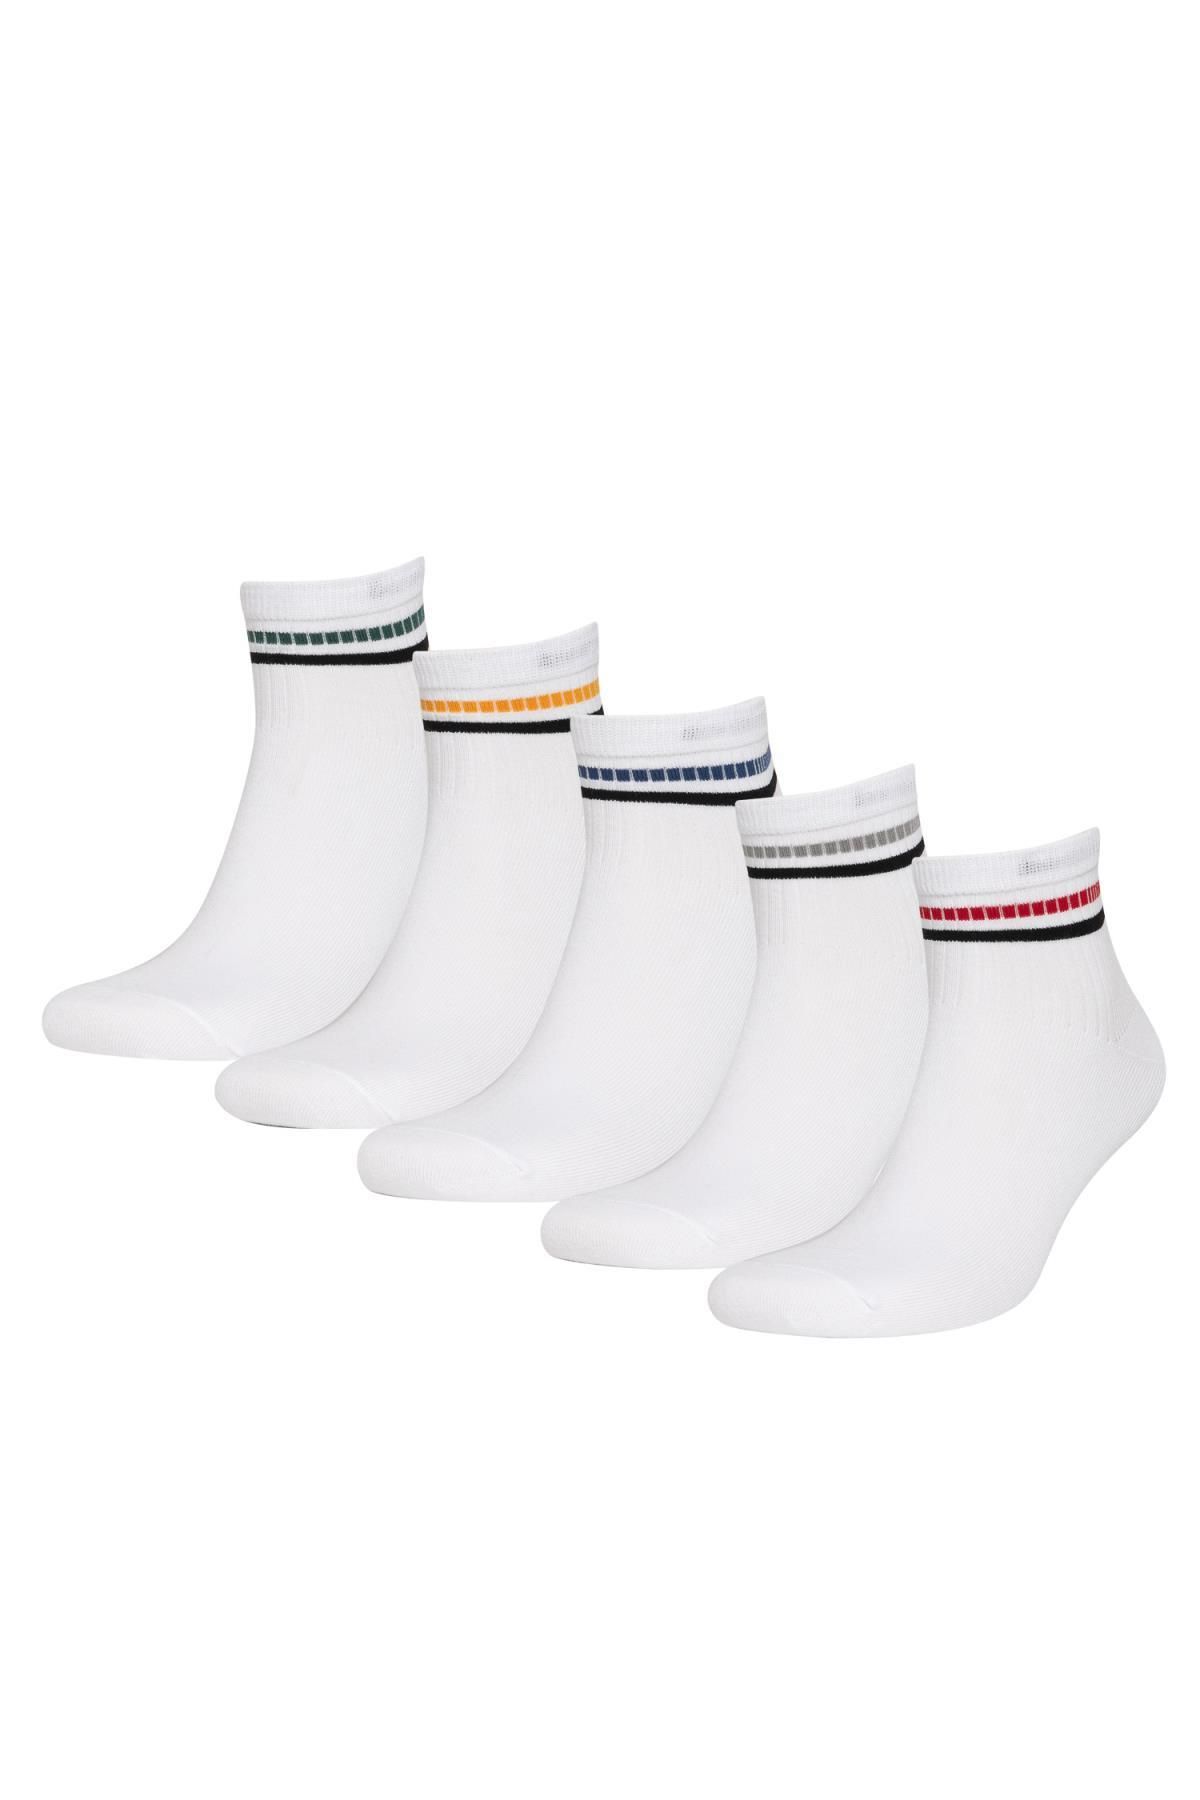 Defacto Erkek 5'li Pamuklu Soket Çorap C0167axns